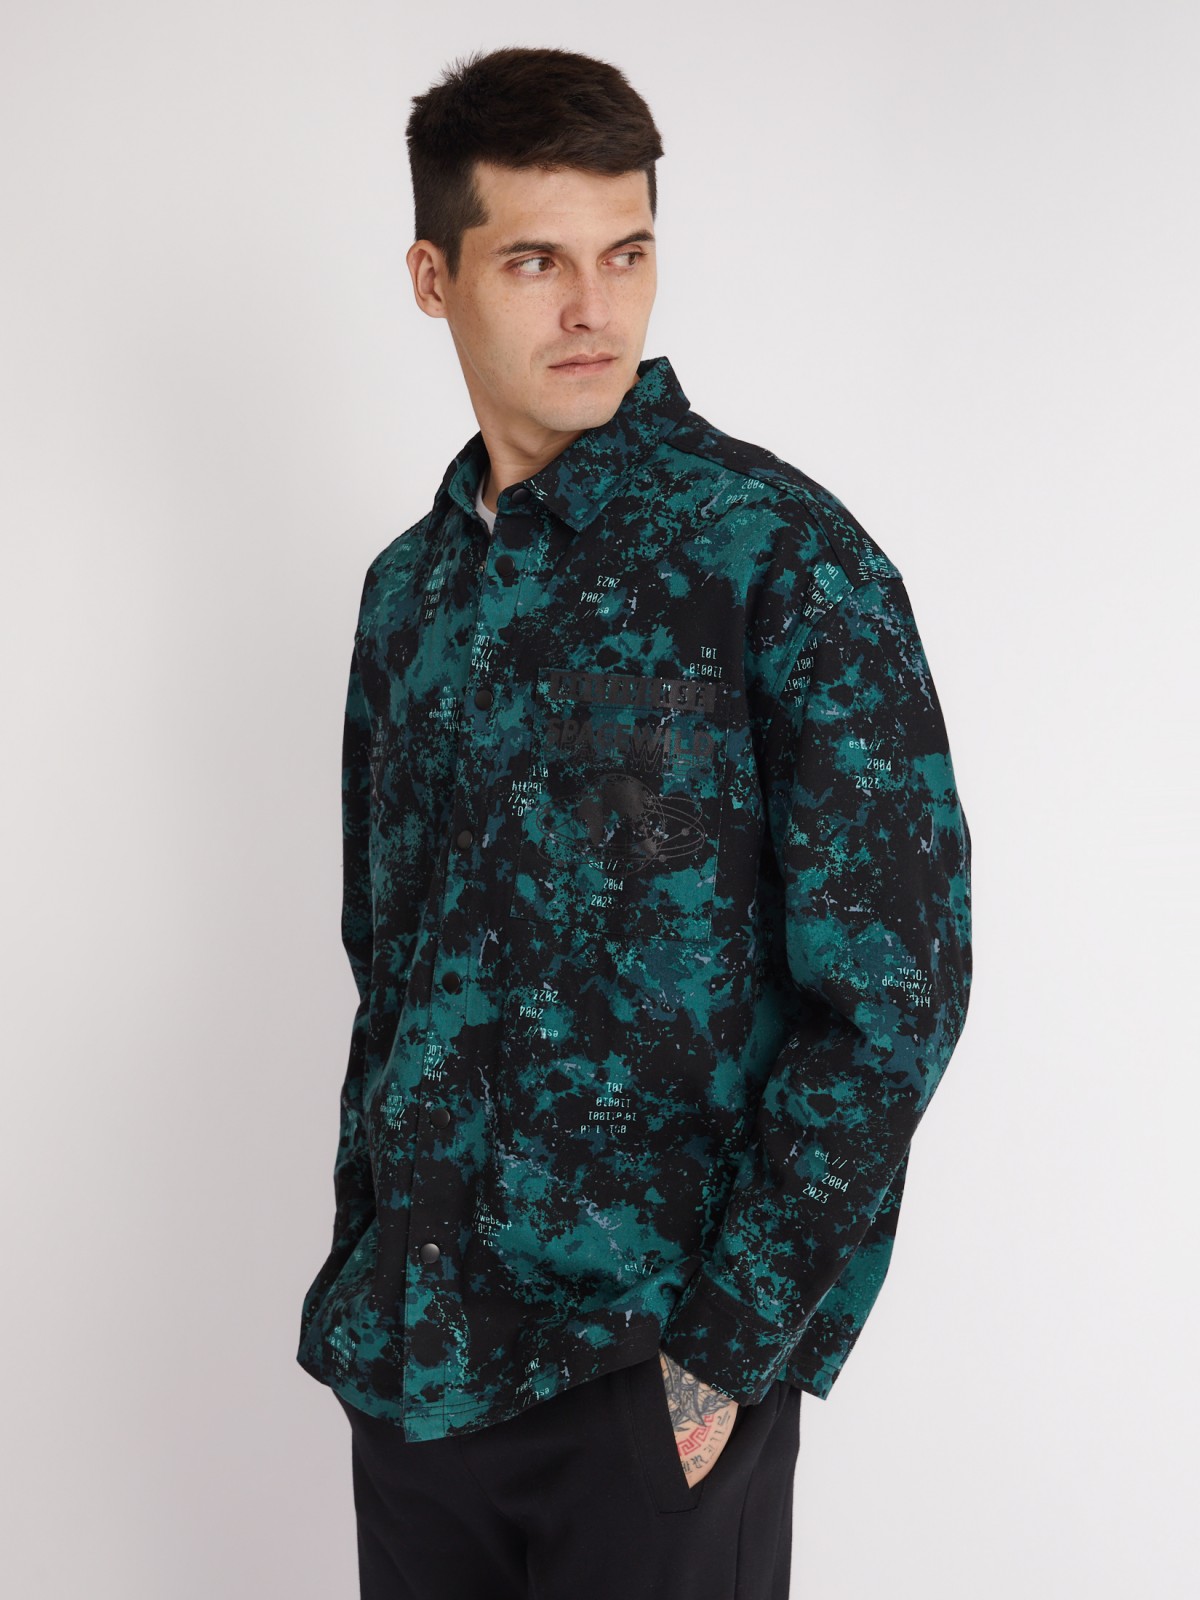 Куртка-рубашка из хлопка с принтом и нагрудным карманом zolla 213322191021, цвет бирюзовый, размер S - фото 4